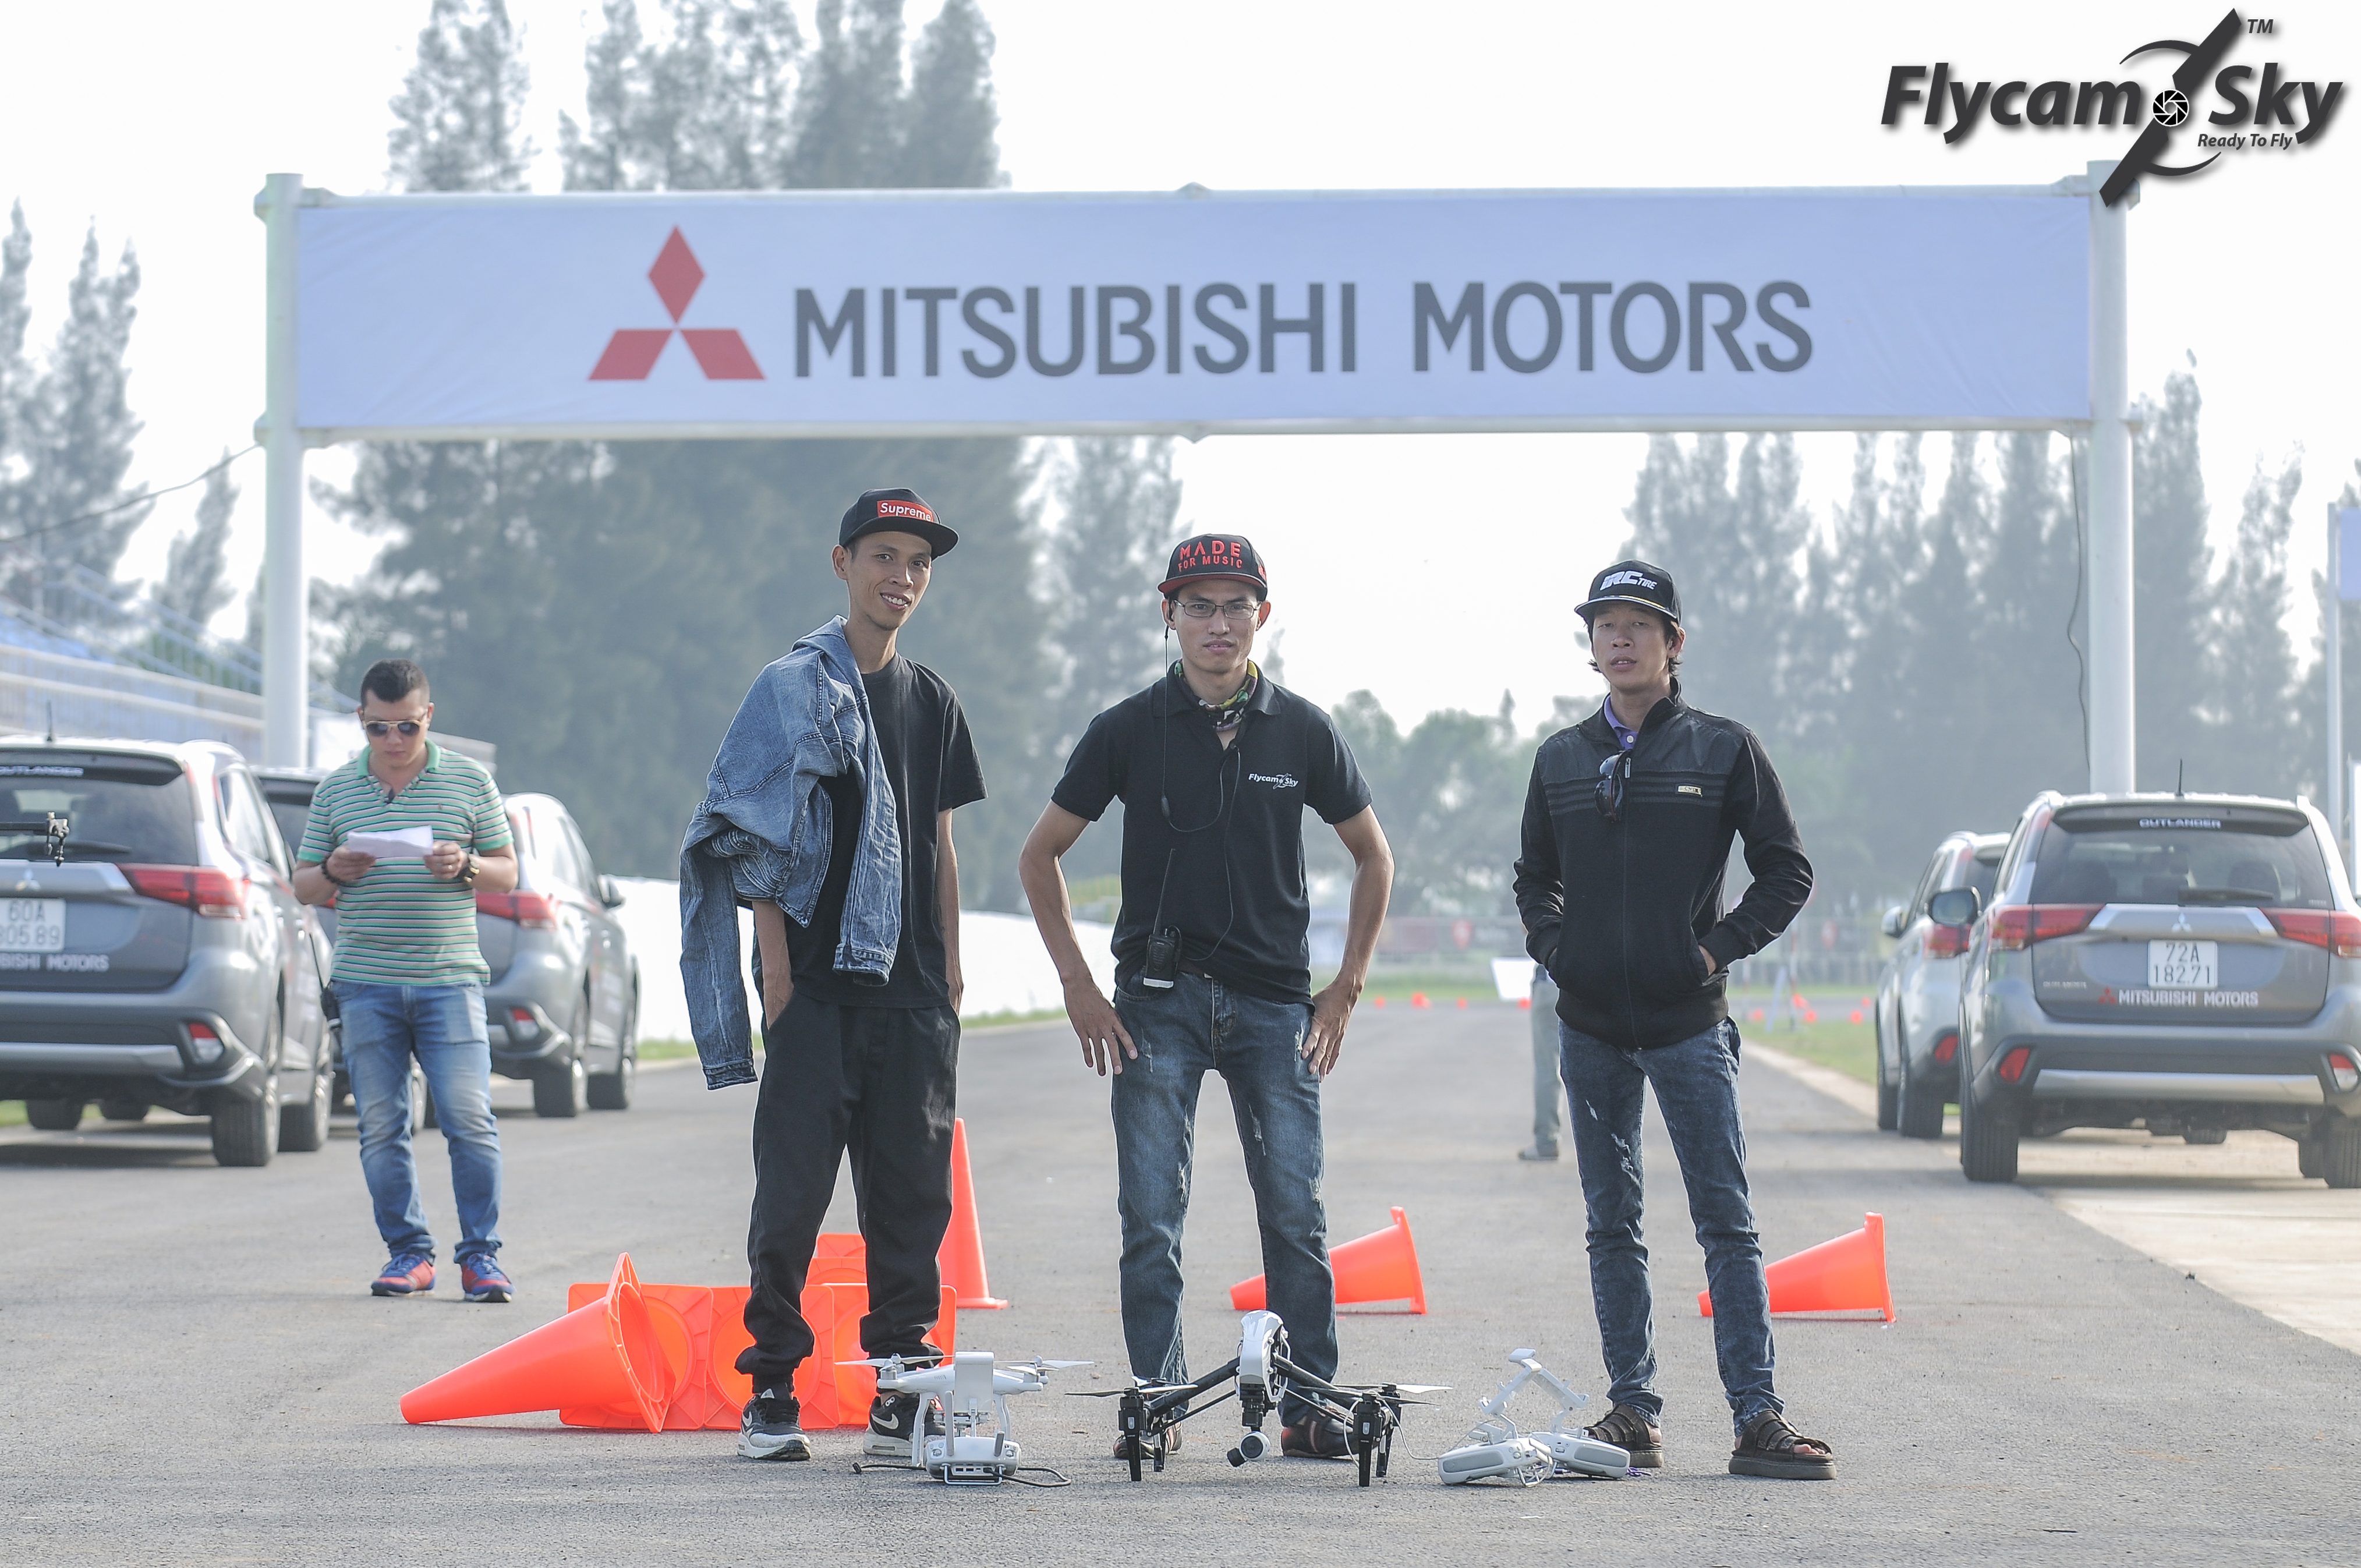 Flycam Sky tác nghiệp tại Sự kiện Mitsubishi Việt Nam ra mắt tại Trường đua Happy Land